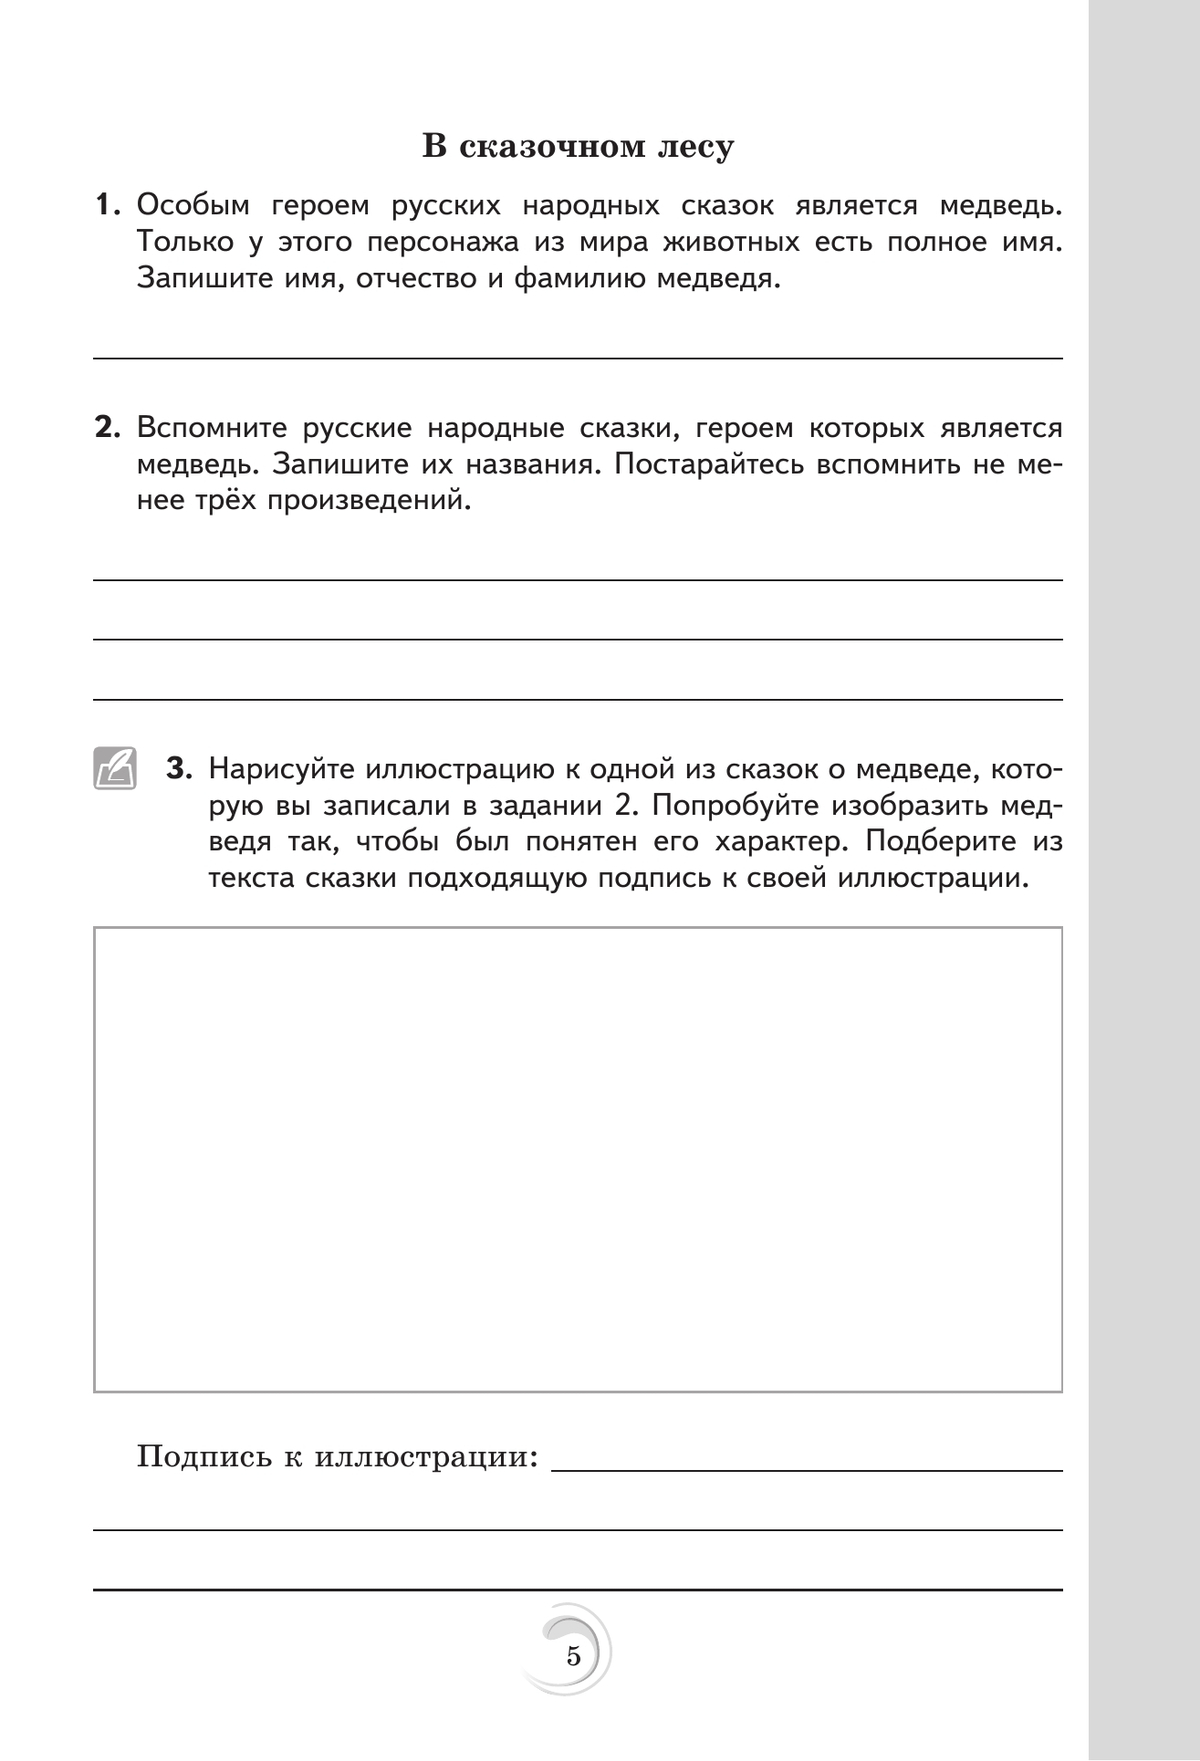 Родная русская литература. 5 класс. Практикум 2